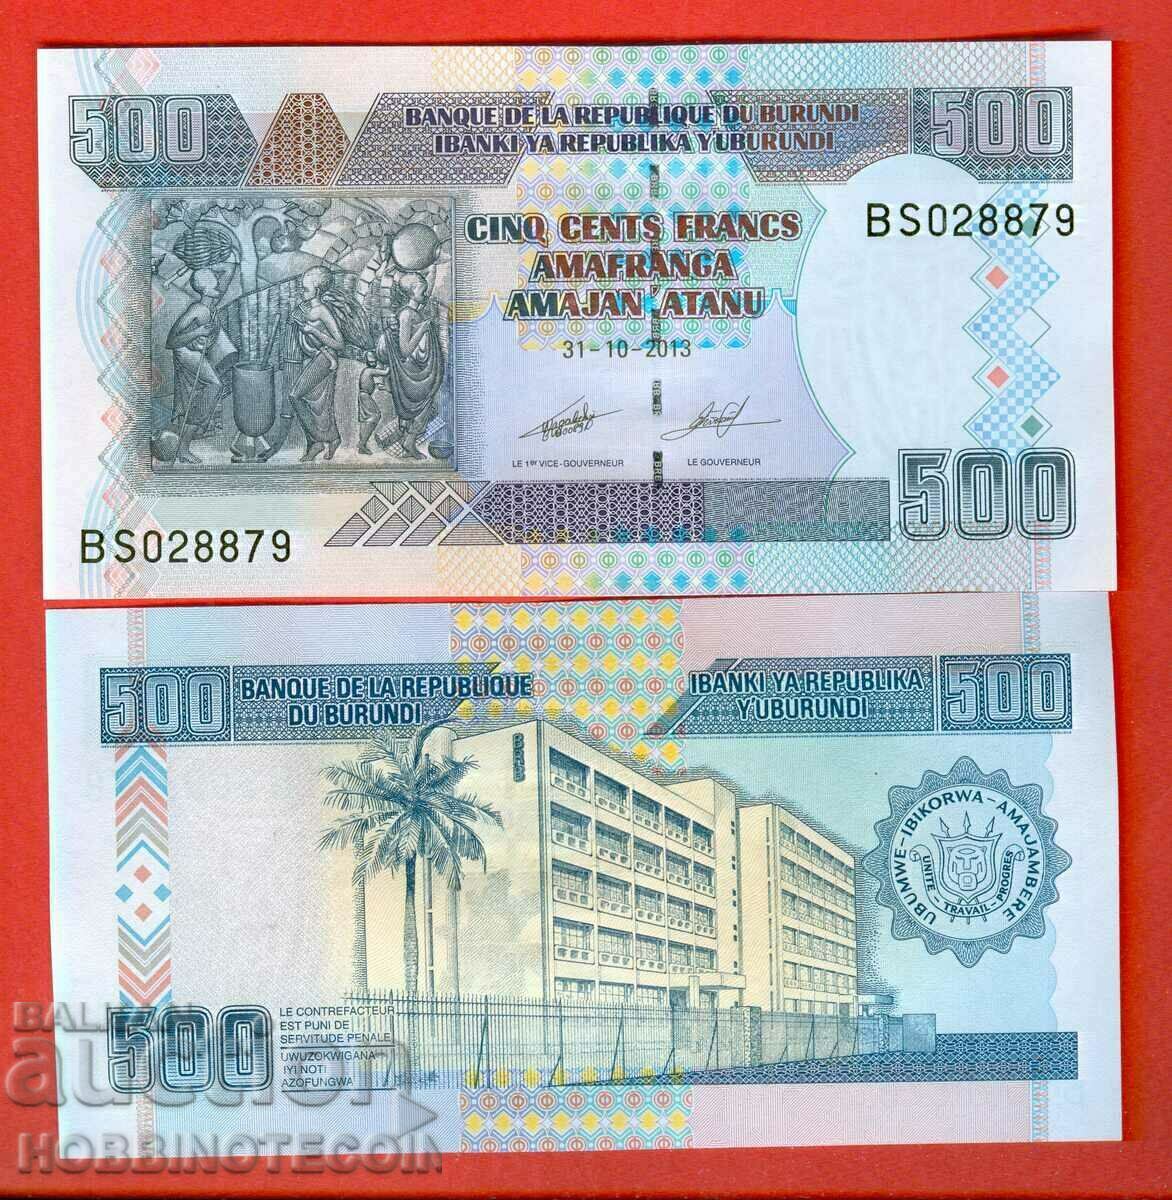 BURUNDI BURUNDI 500 Franc issue issue 2013 NEW UNC